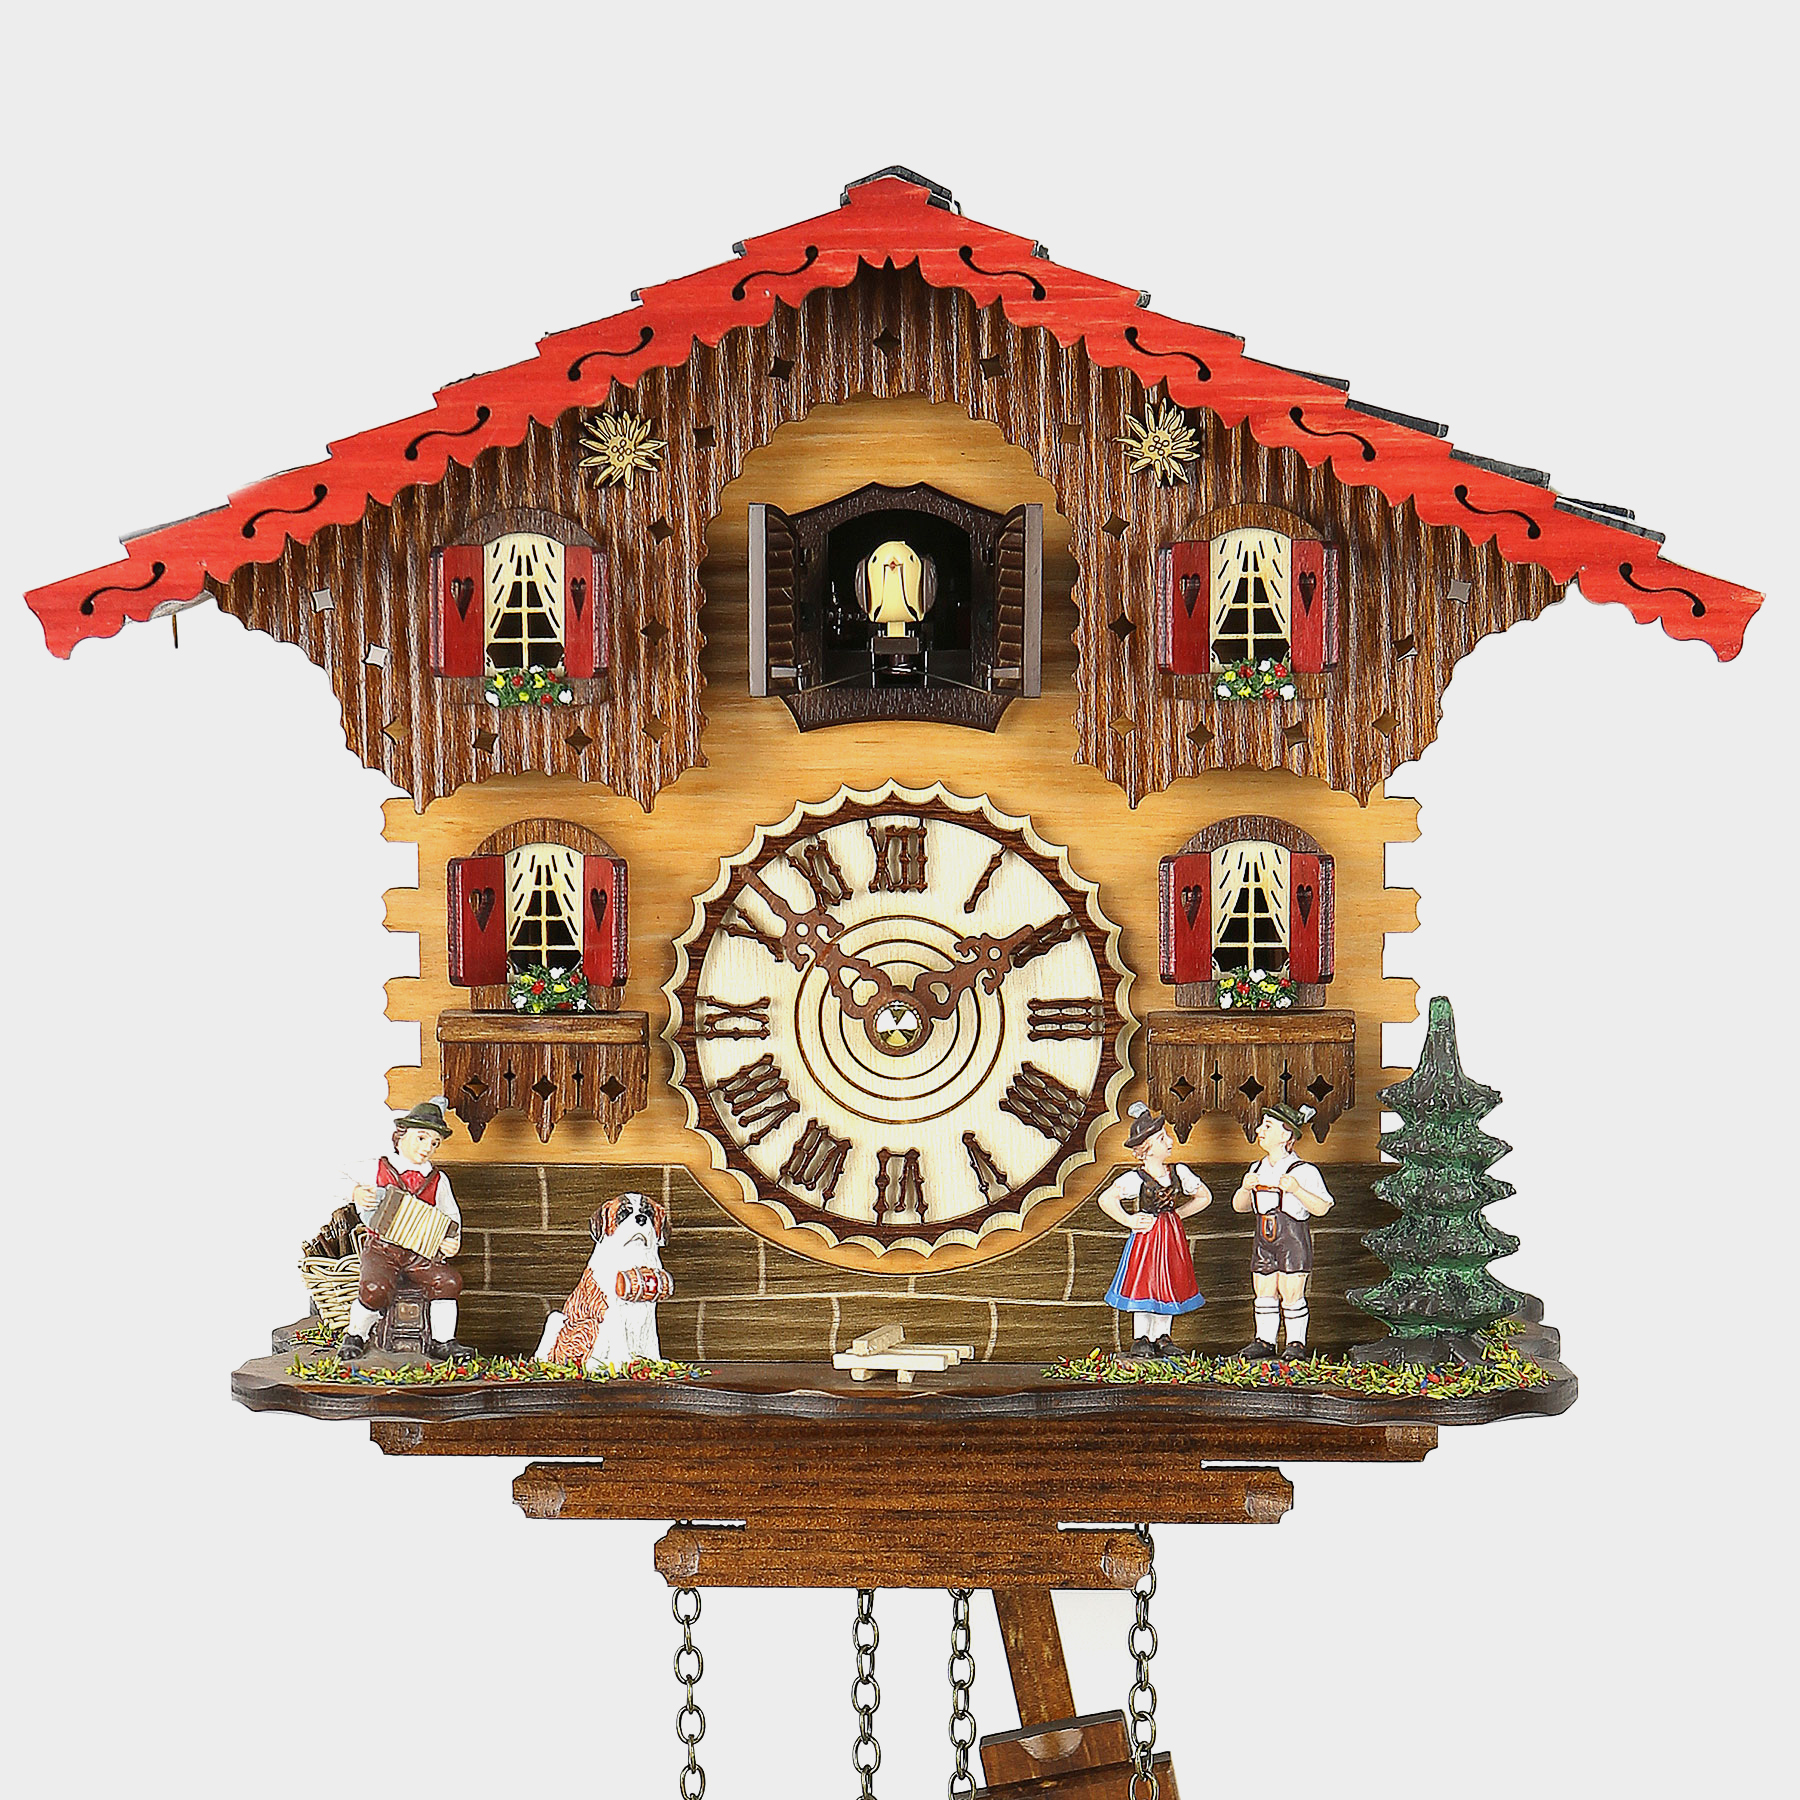 Reloj cuco - Chalet - Kuckucksuhren Shop - Original Kuckucksuhren